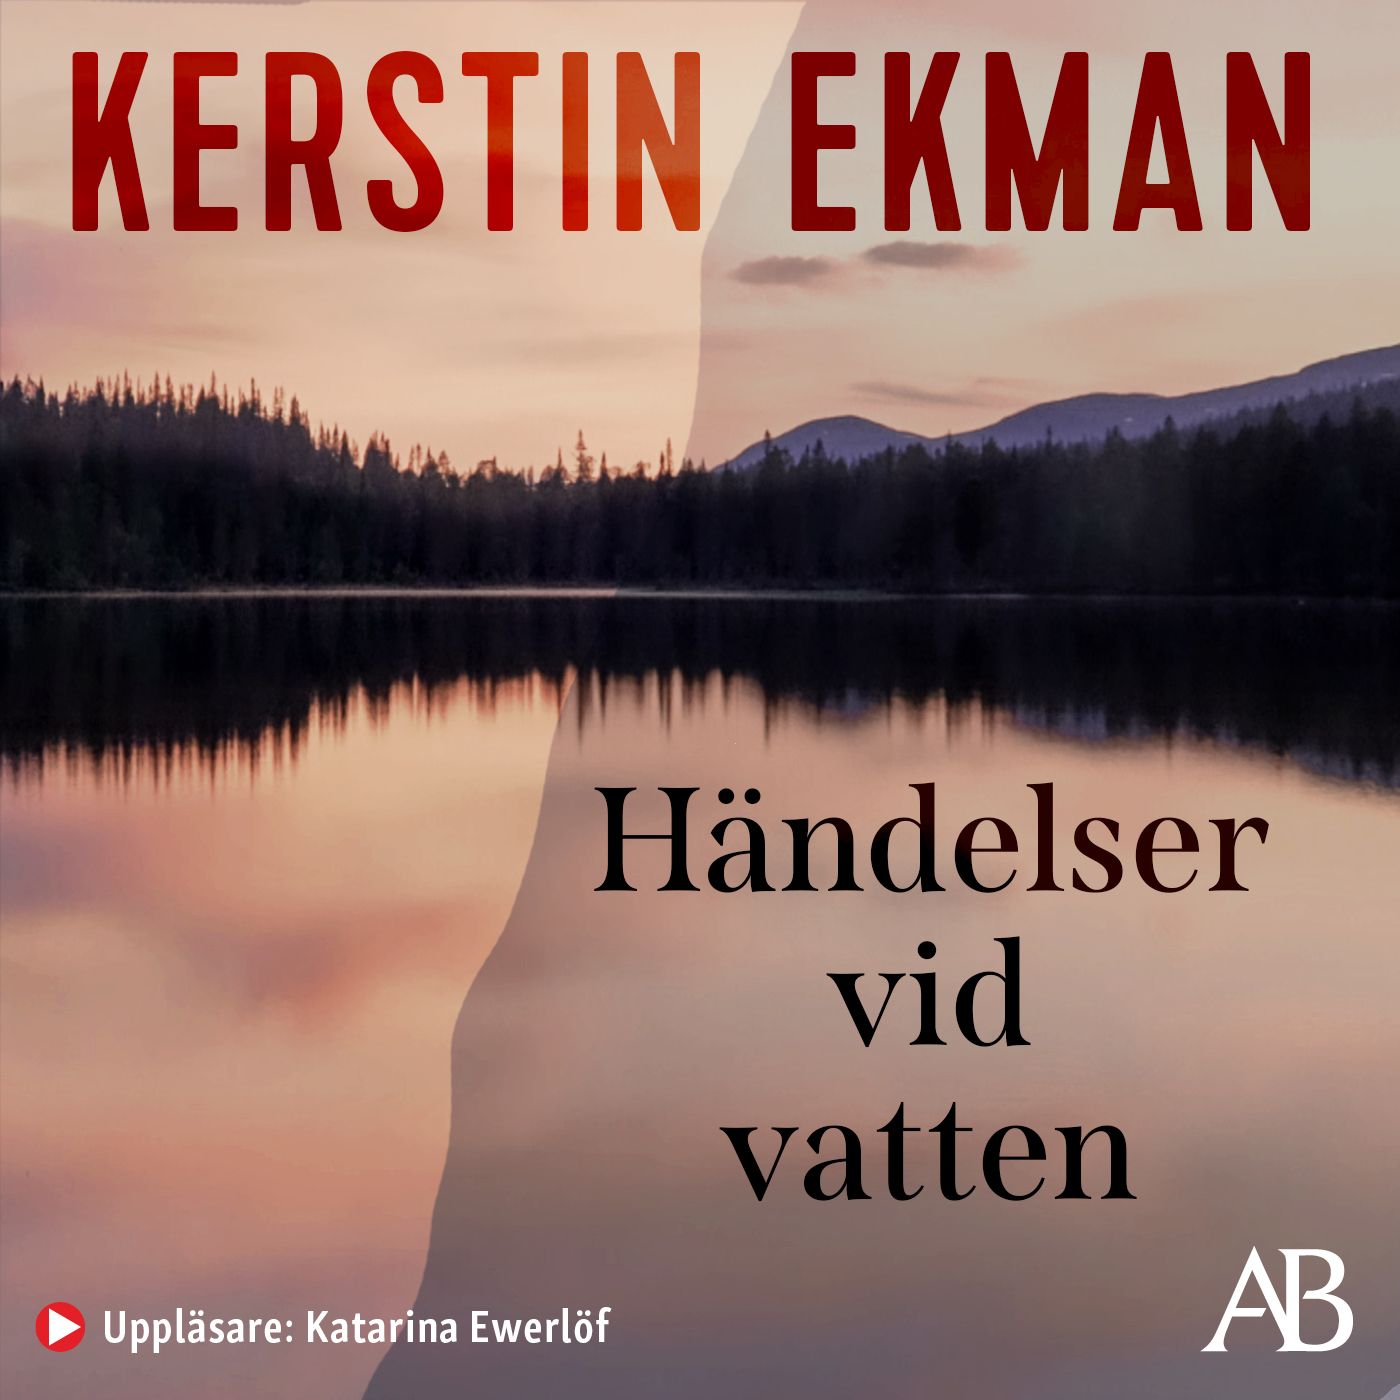 Händelser vid vatten, ljudbok av Kerstin Ekman